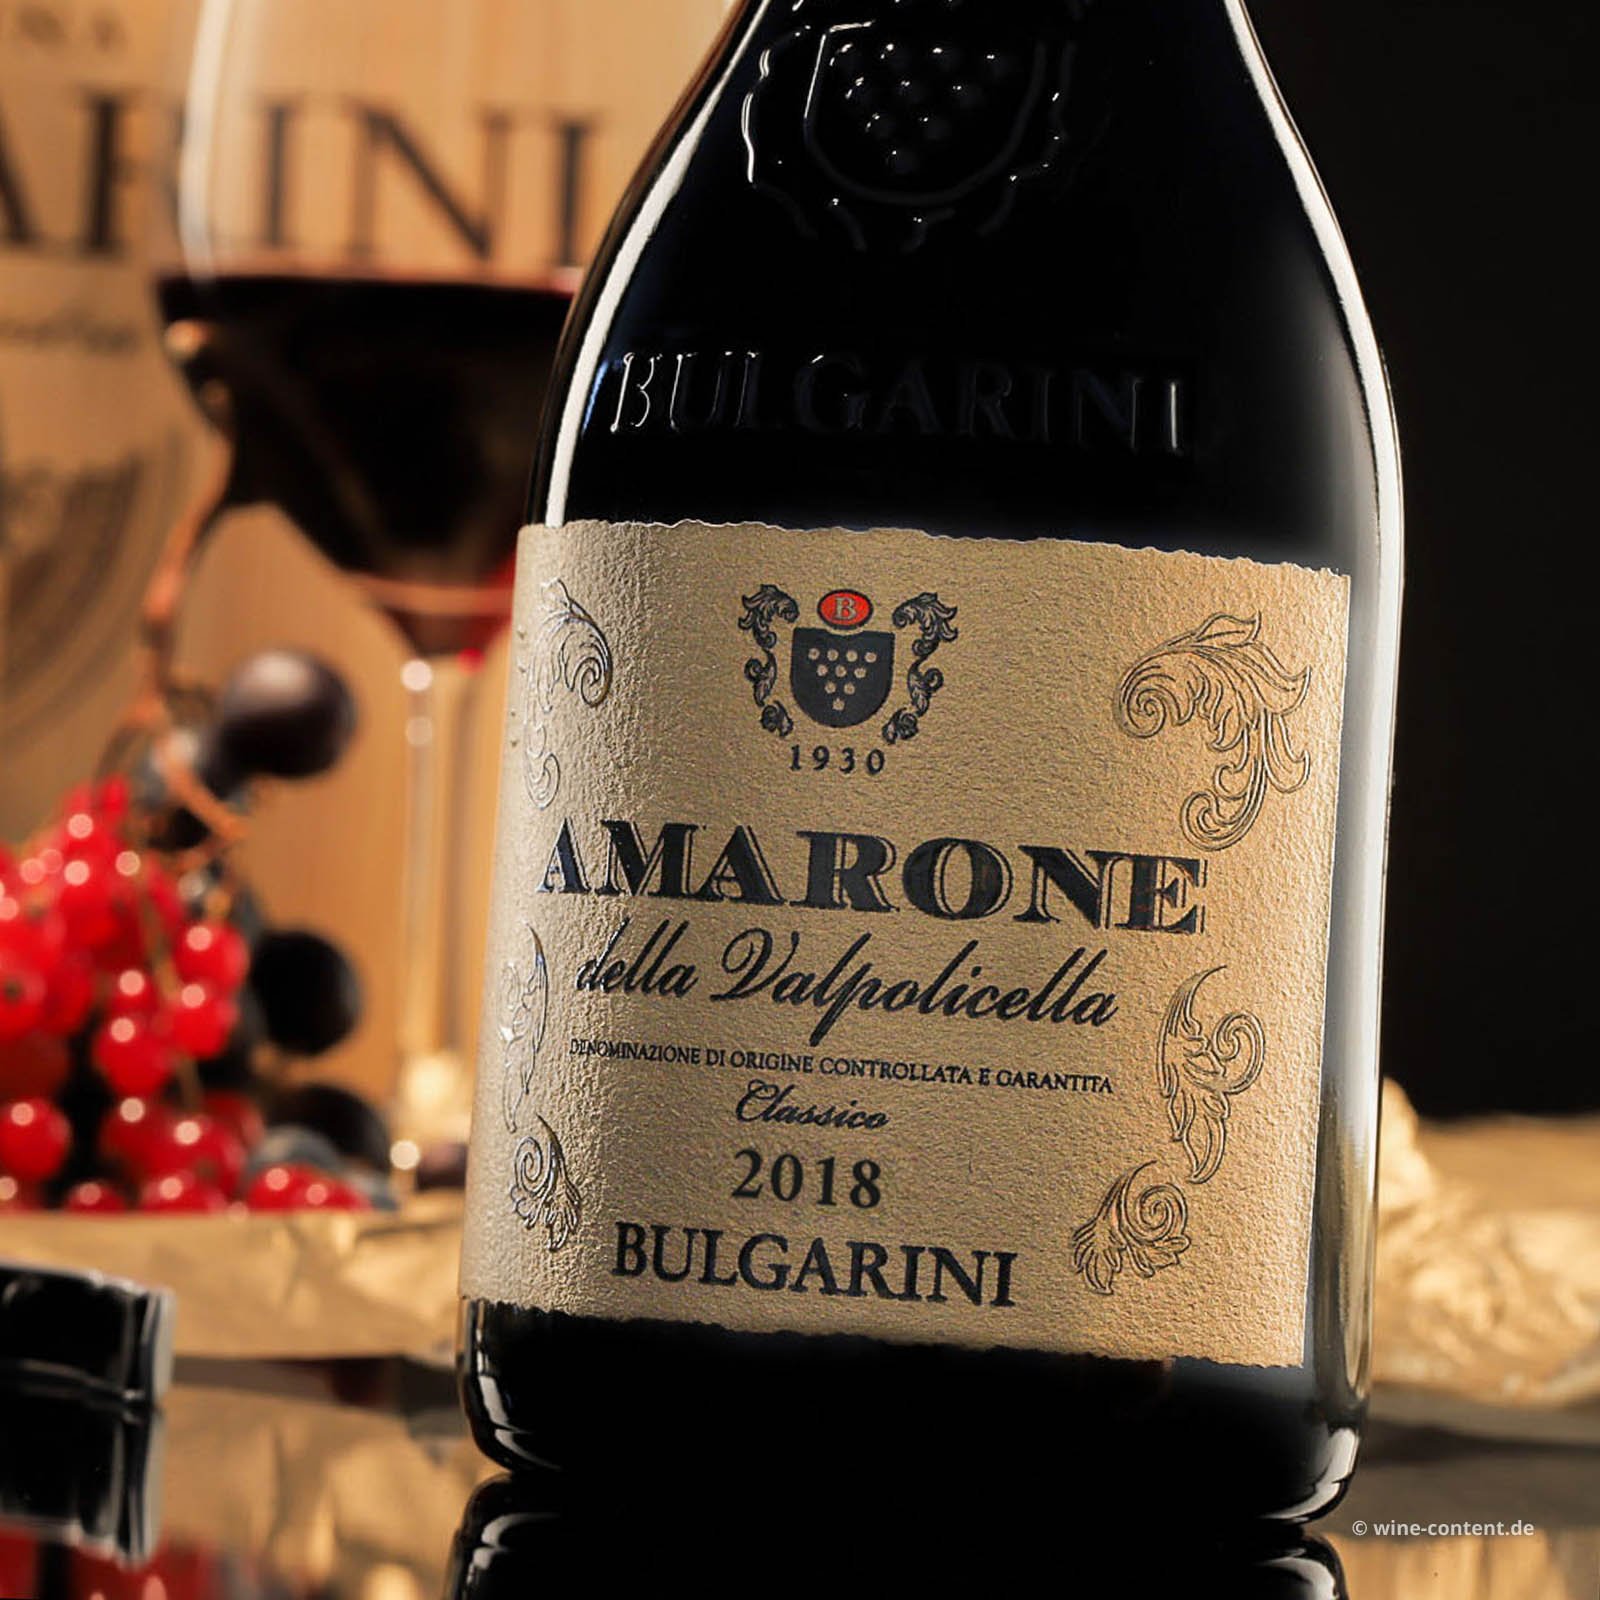 Amarone Classico 2018 Bulgarini